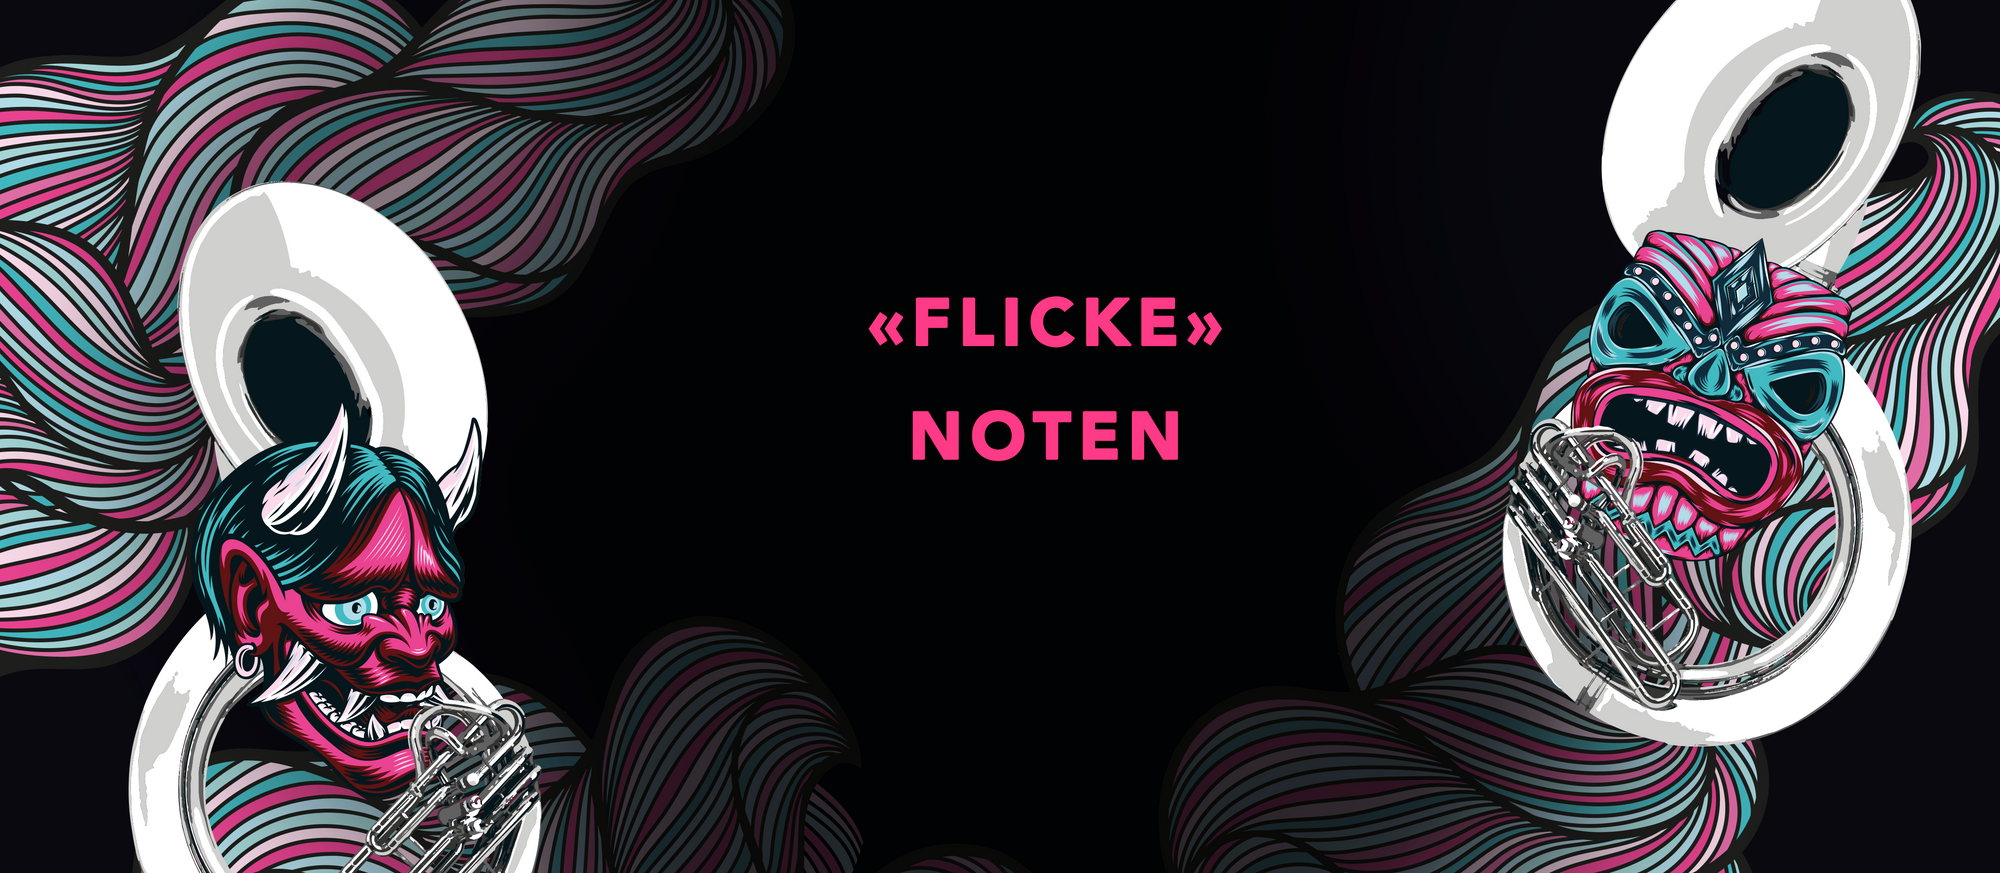 FLICKE (Noten)